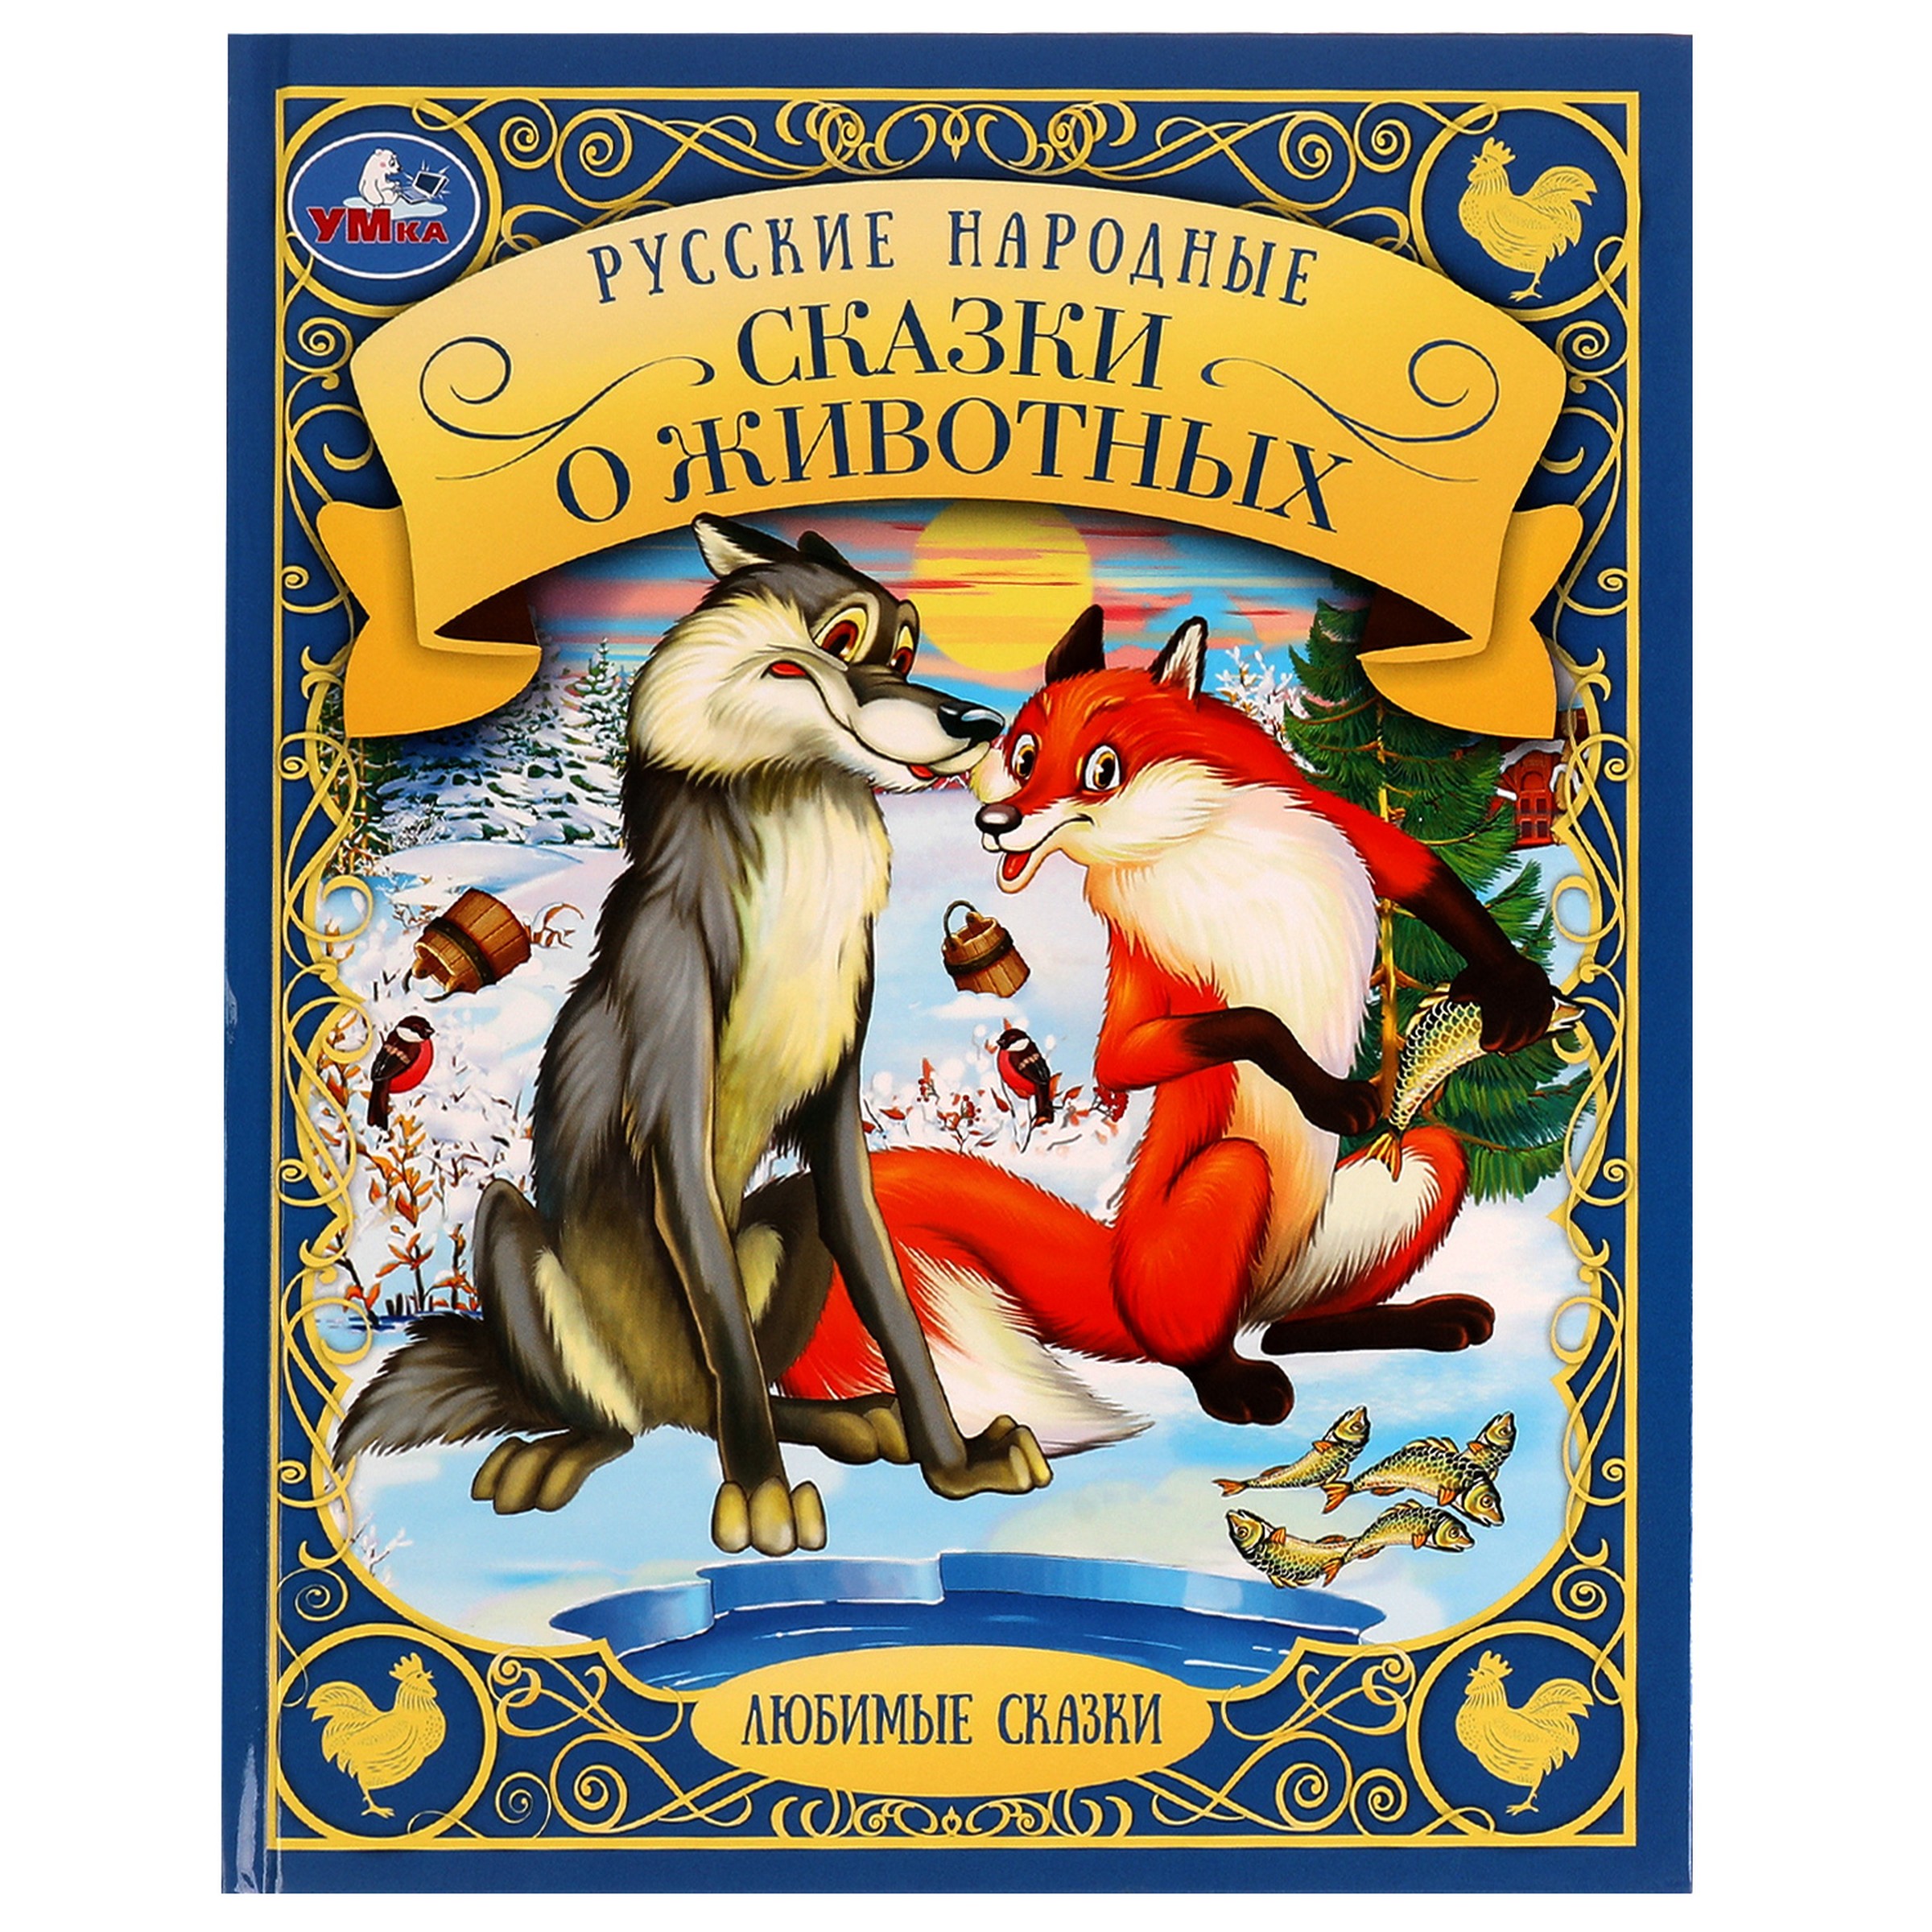 Любимые сказки. Русские народные сказки о животных русские сказки о животных